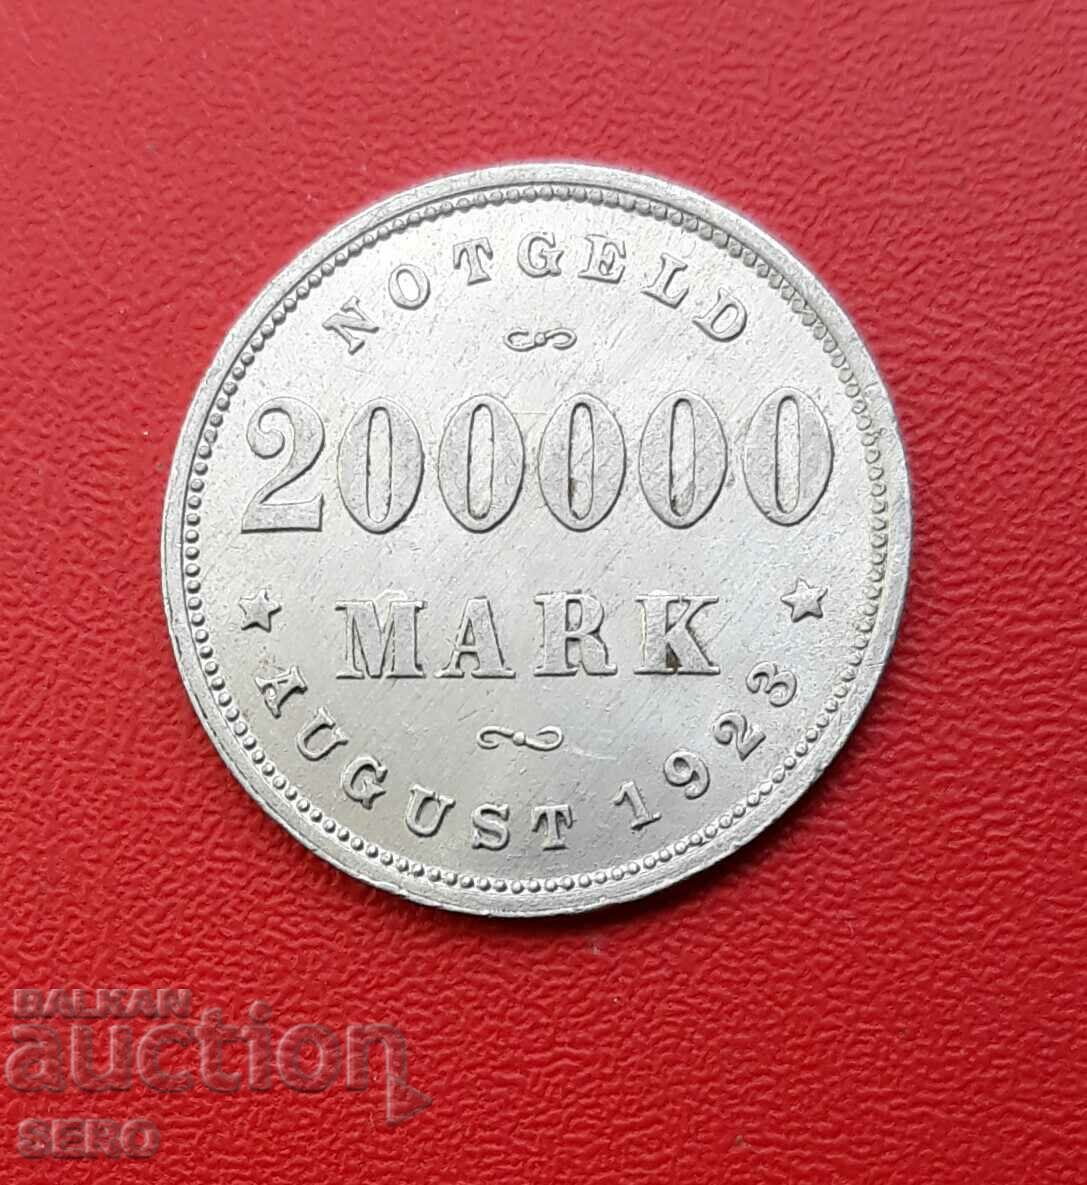 Γερμανία-Αμβούργο-200.000 μάρκα 1923